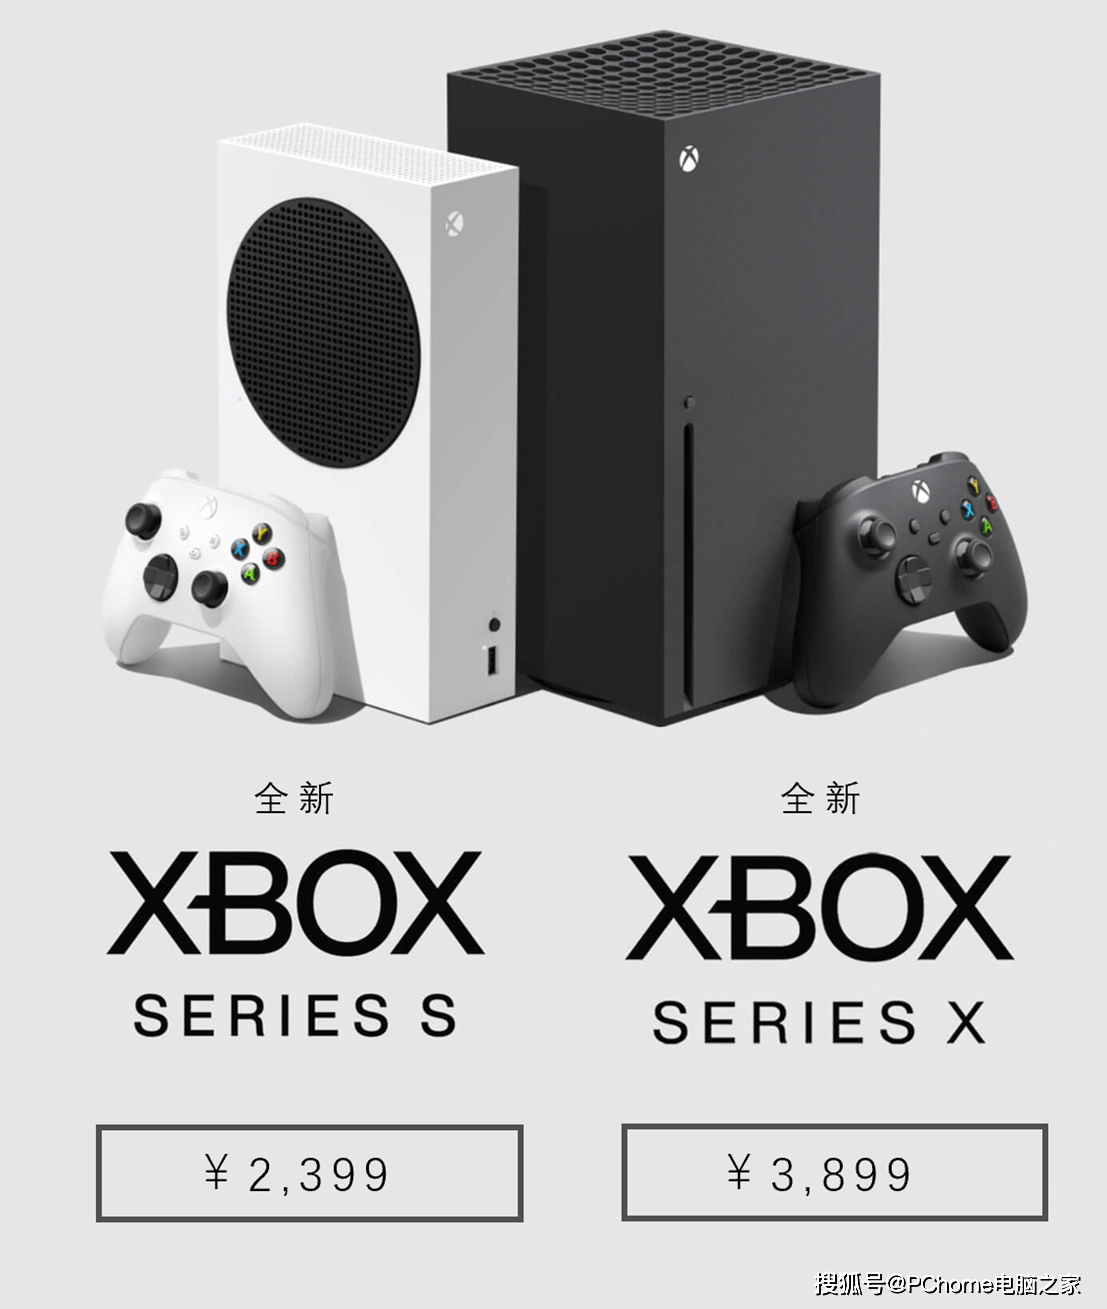 技术|微软公布国行版Xbox Serious S/X售价